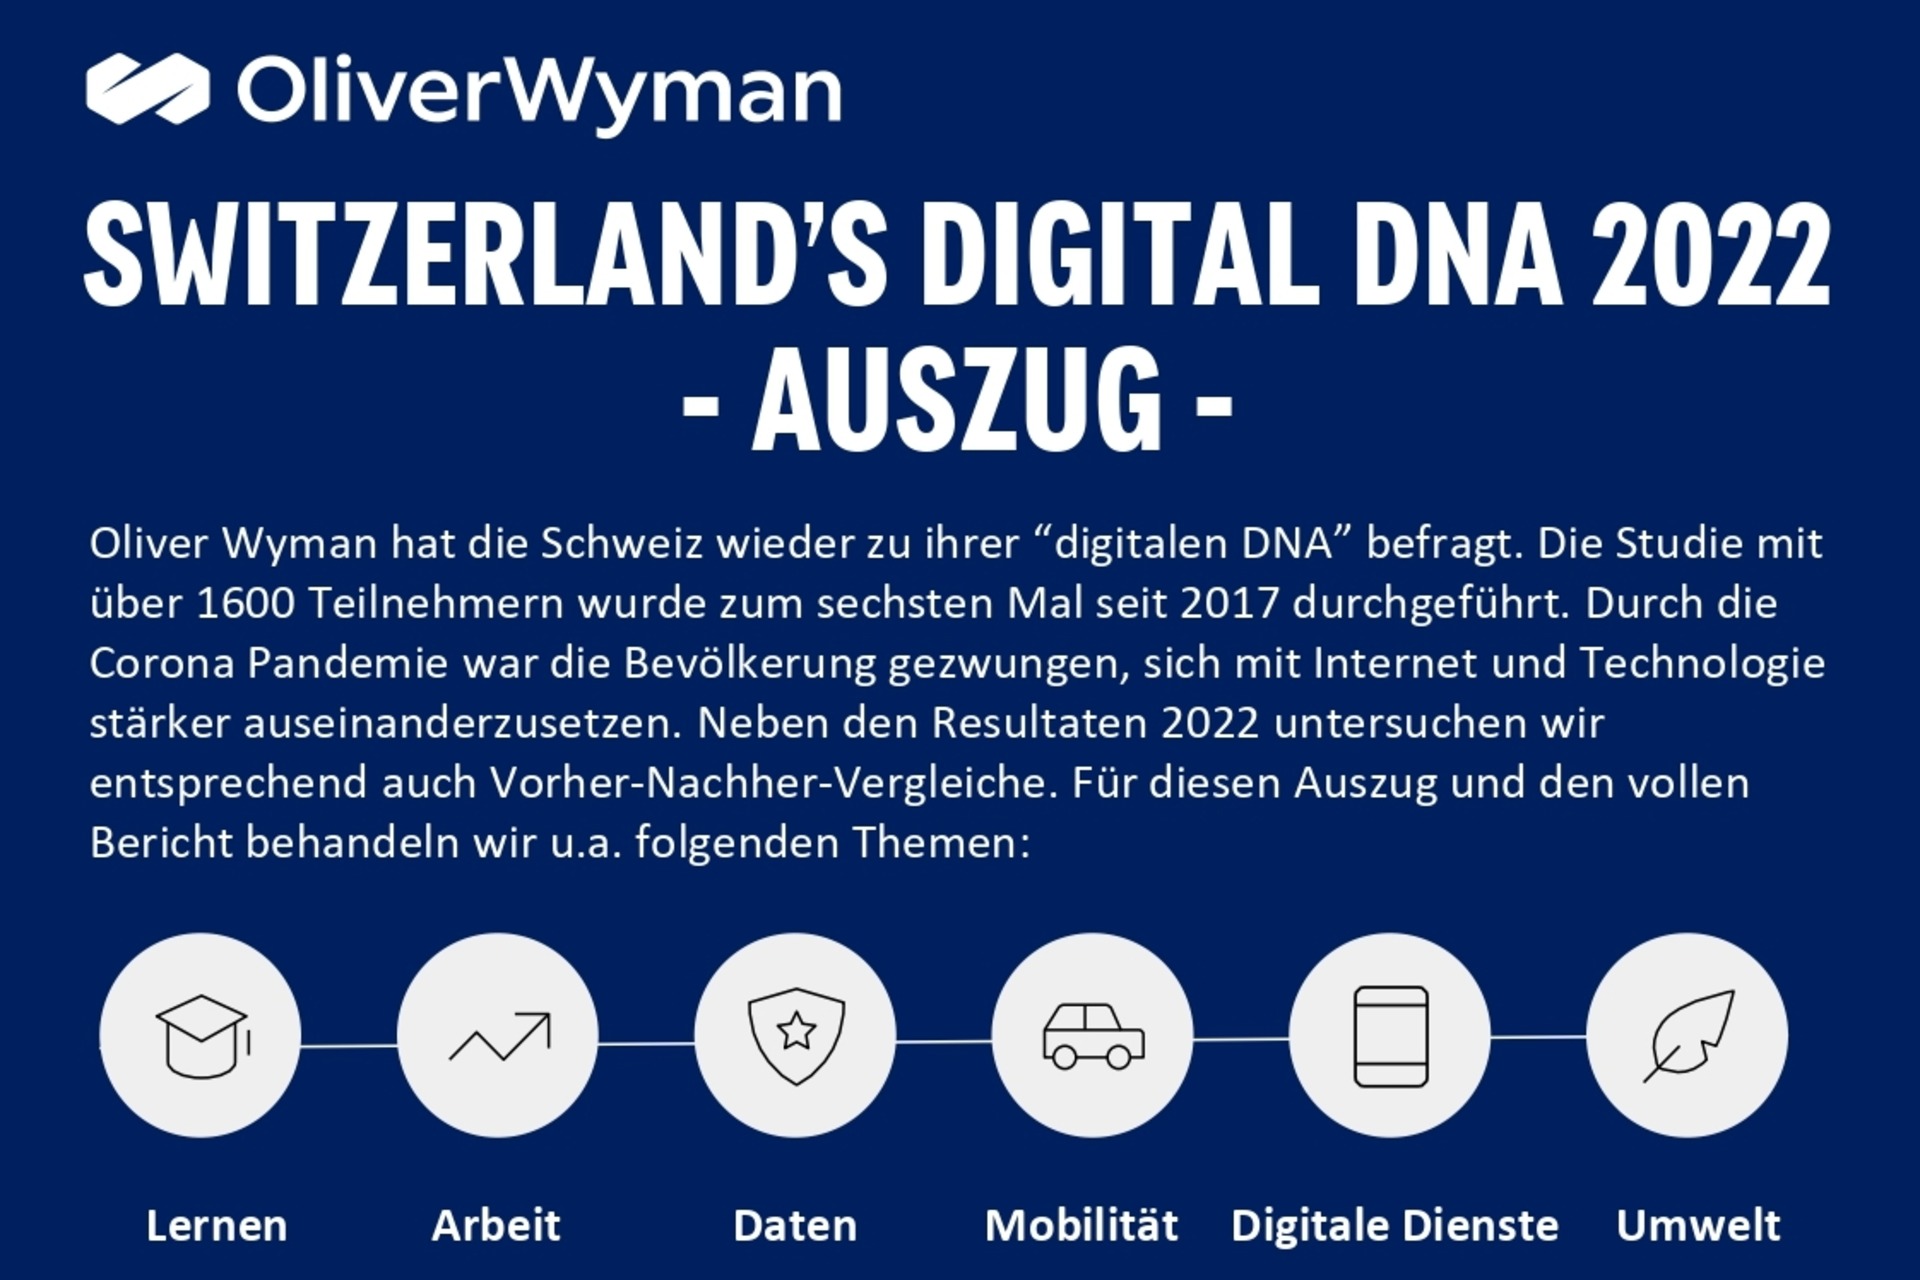 Oliver Wyman ve digitalswitzerland tarafından hazırlanan "İsviçre Dijital DNA" araştırma infografiklerinin ilk sayfasının başı